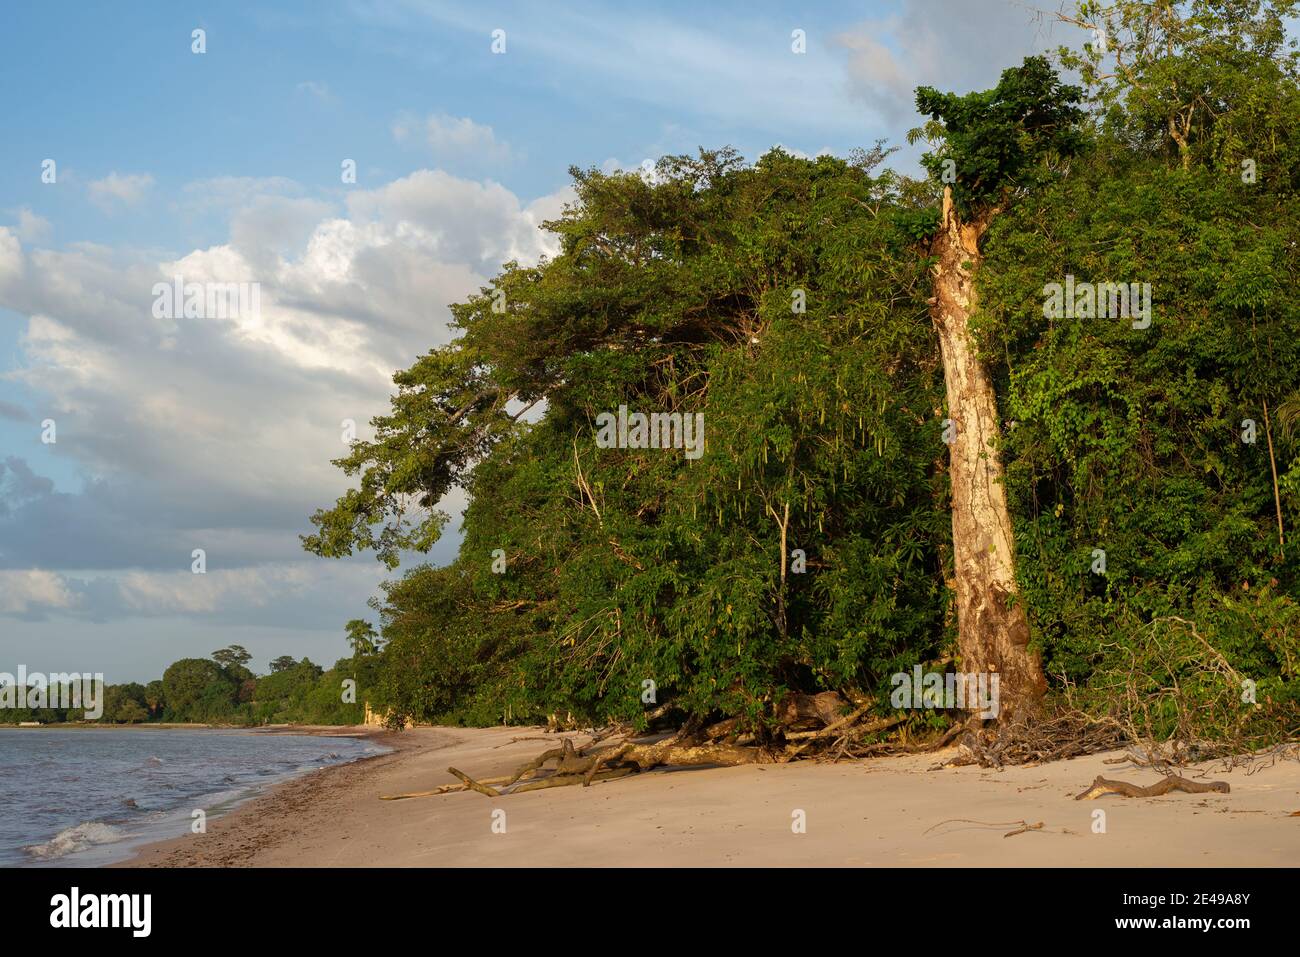 Vue d'un grand tronc d'arbre qui reste debout après que ses branches tombent sur le sable de la plage. Itupanema Amazone Beach, Barcarena, Pará State, Brésil. Banque D'Images